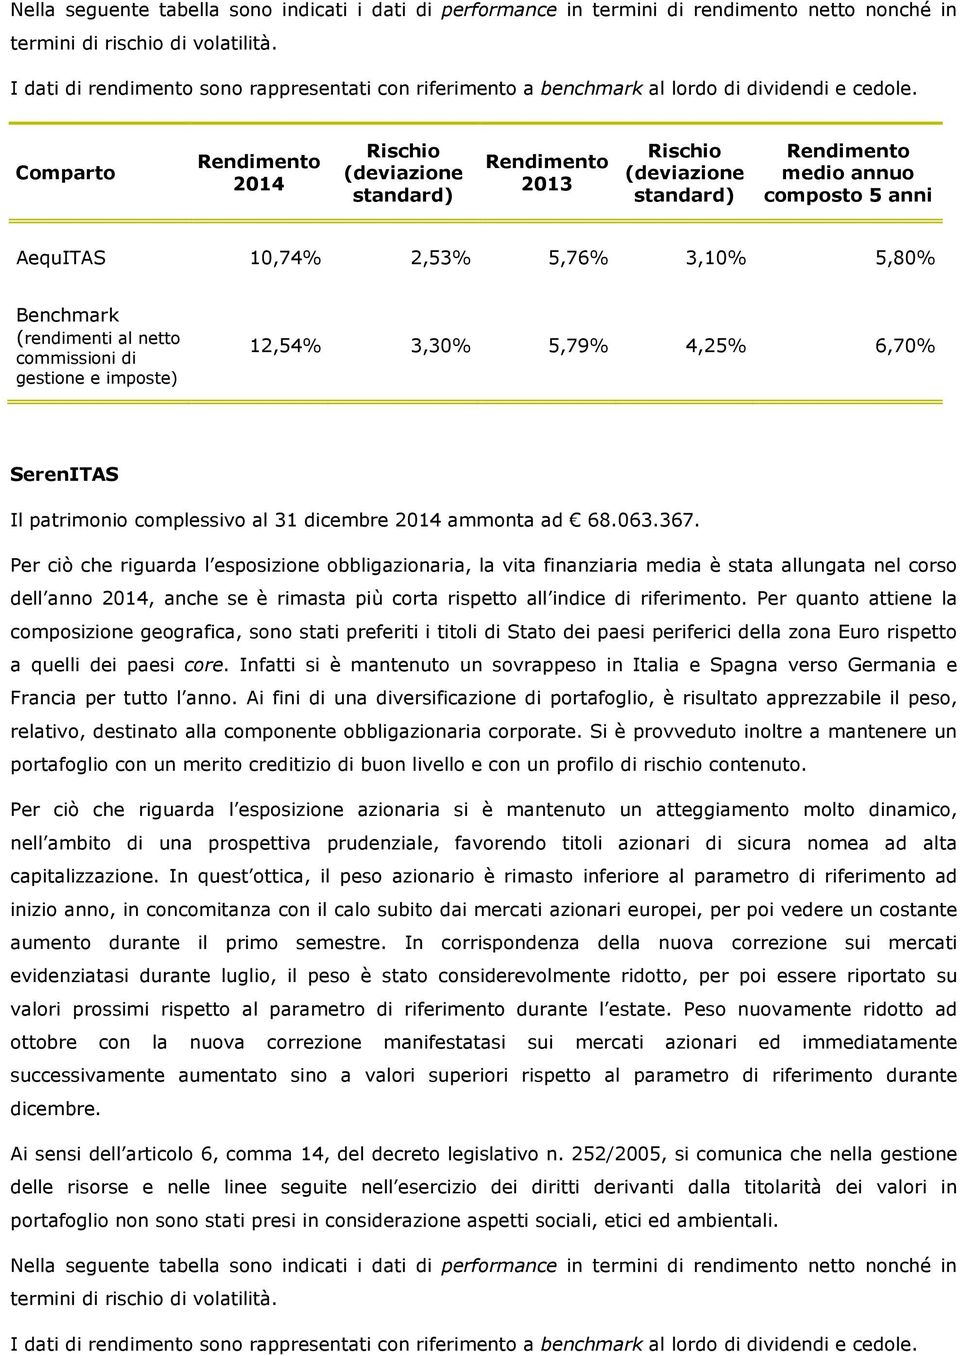 2014 2013 medio annuo composto 5 anni AequITAS 10,74% 2,53% 5,76% 3,10% 5,80% Benchmark (rendimenti al netto commissioni di gestione e imposte) 12,54% 3,30% 5,79% 4,25% 6,70% SerenITAS Il patrimonio